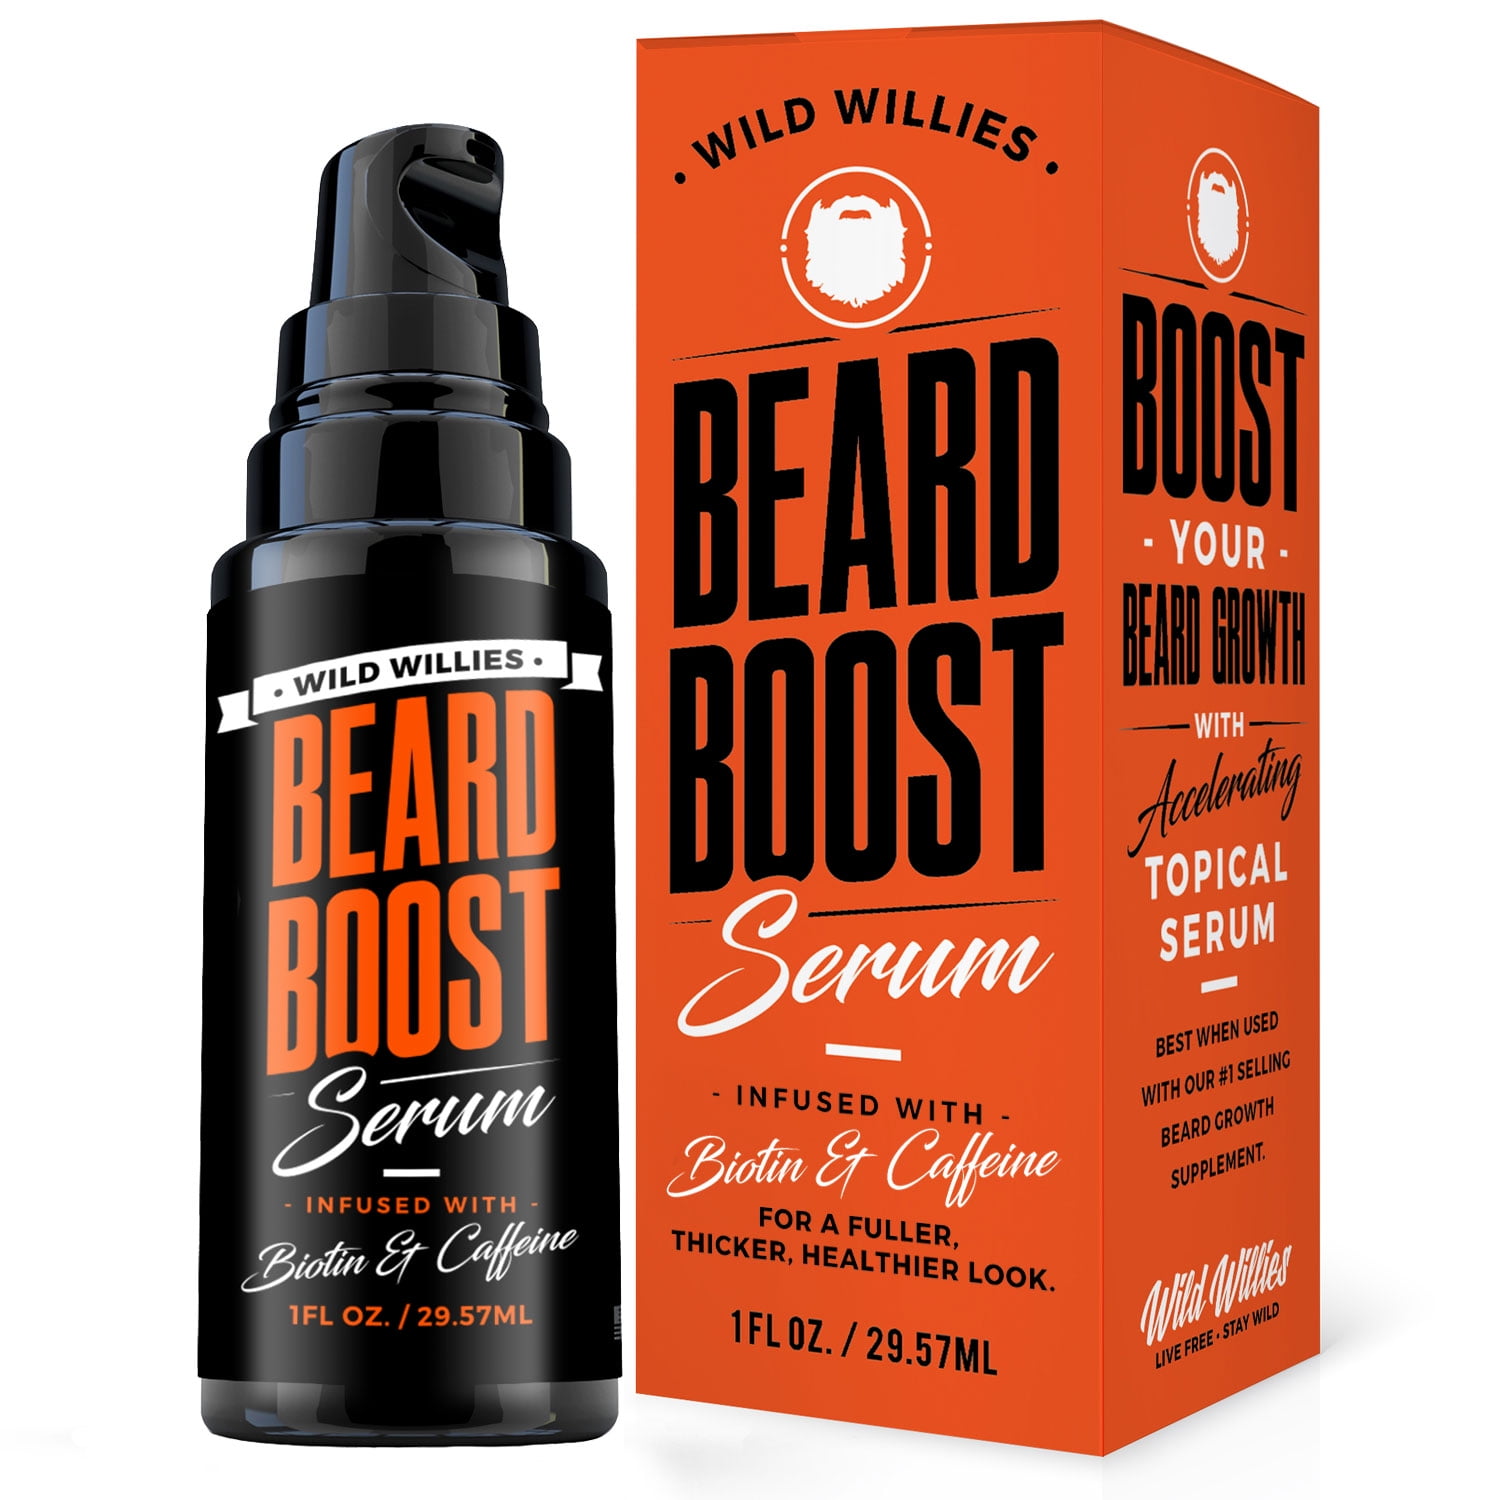 beard oil kit walmart